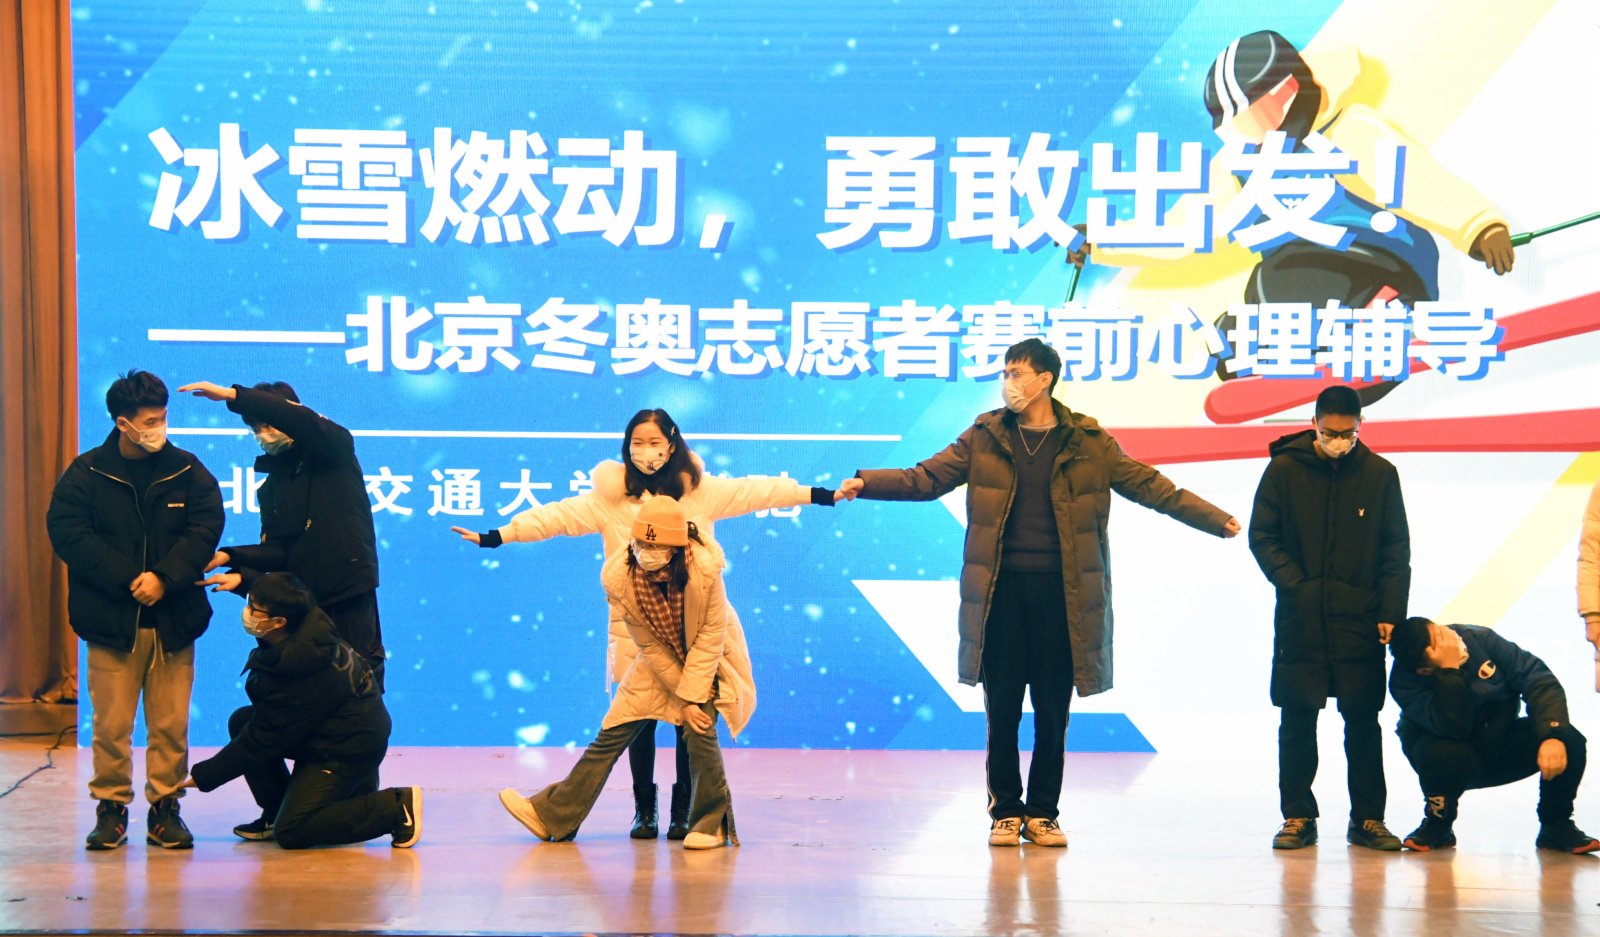 在北京交通大學天佑會堂，冬奧志願者進行賽前心理輔導（1月21日攝）。（新華社）